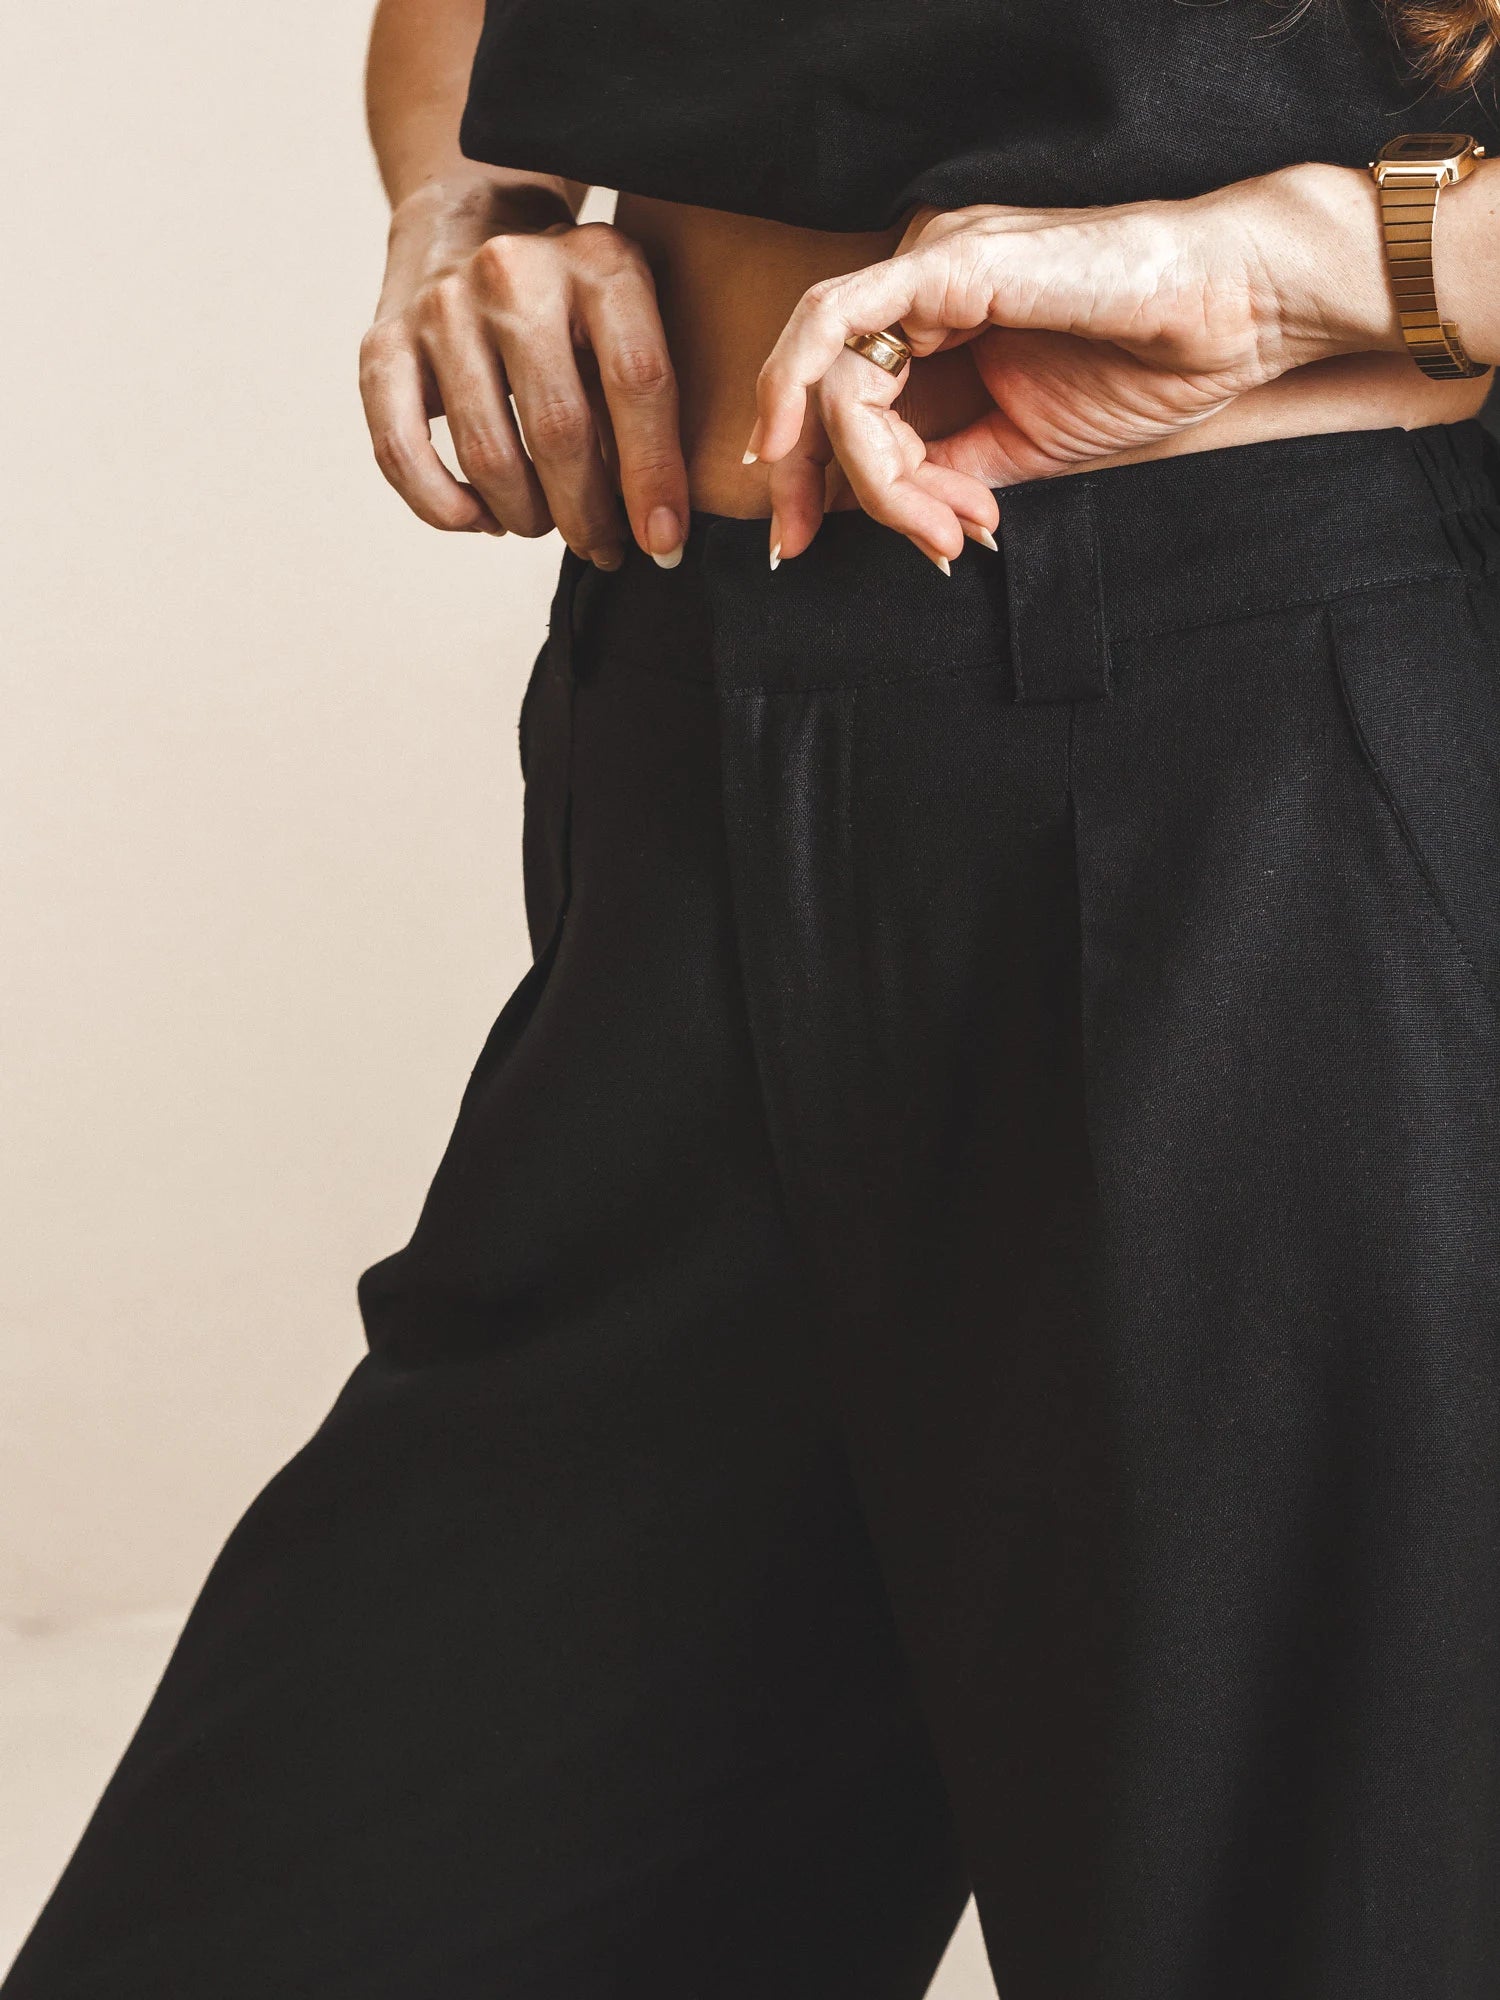 Calça Pantalona de Alfaiataria em Linho e Viscose FSC™ Preta. Compre online moda sustentável e atemporal na Minimadeia. Roupas femininas estilosas, básicas e sustentáveis. Foto produto 08